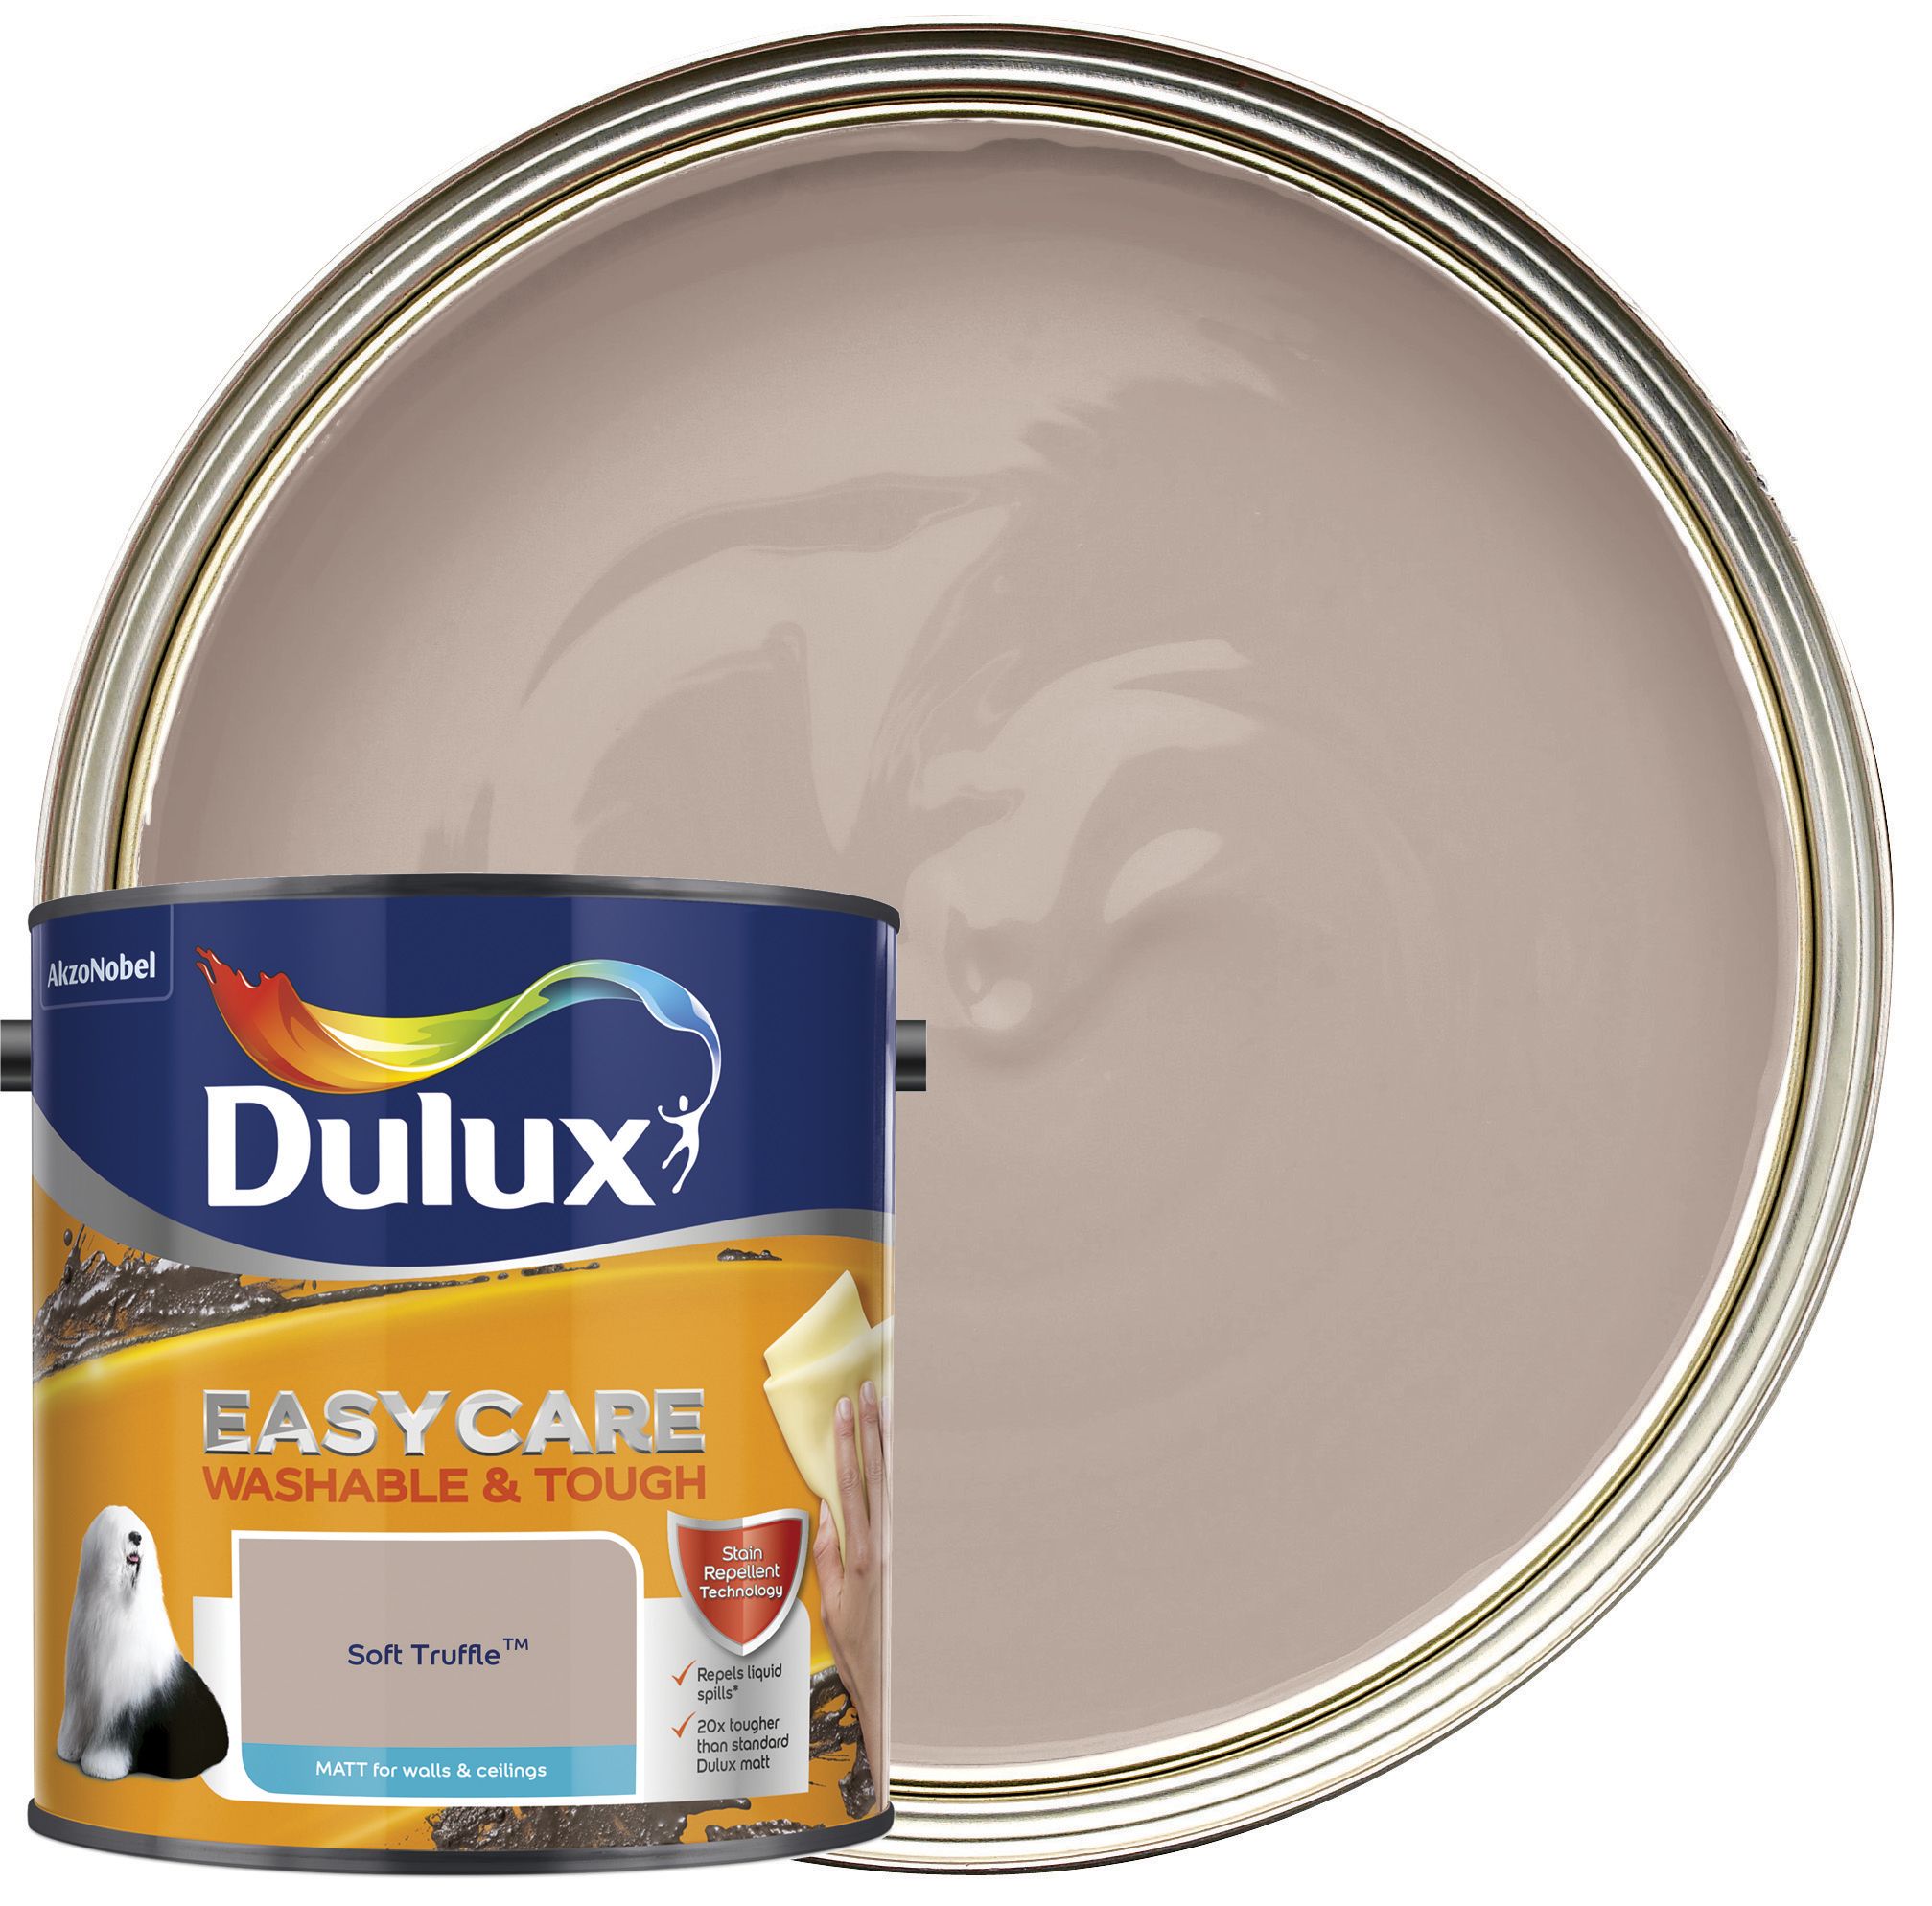 Dulux Easycare Washable & Tough Matt Emulsion Paint - Soft Truffle - 2.5L